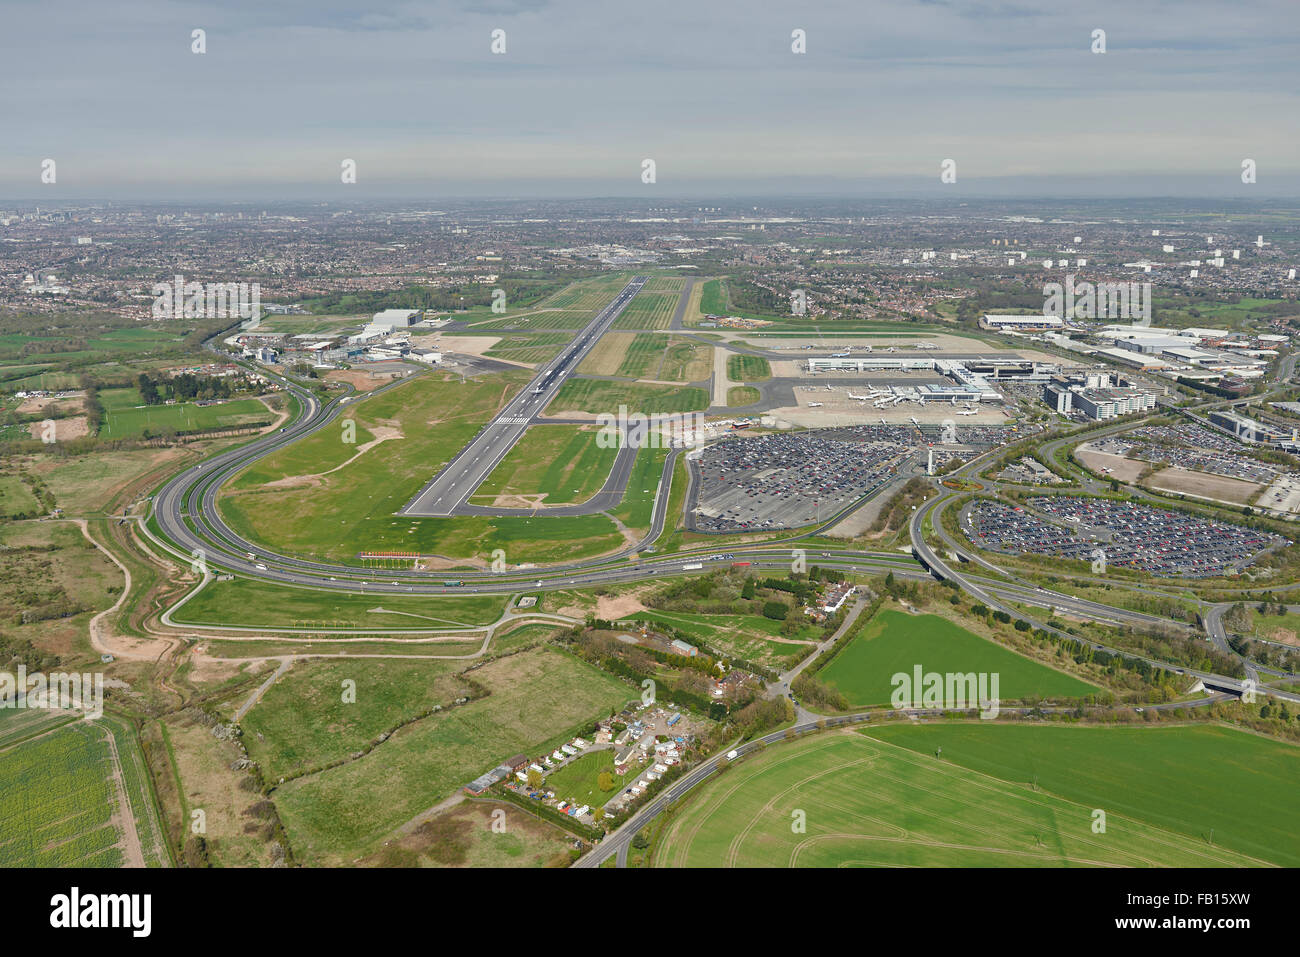 Una vista aérea del Aeropuerto Internacional de Birmingham y alrededores Foto de stock